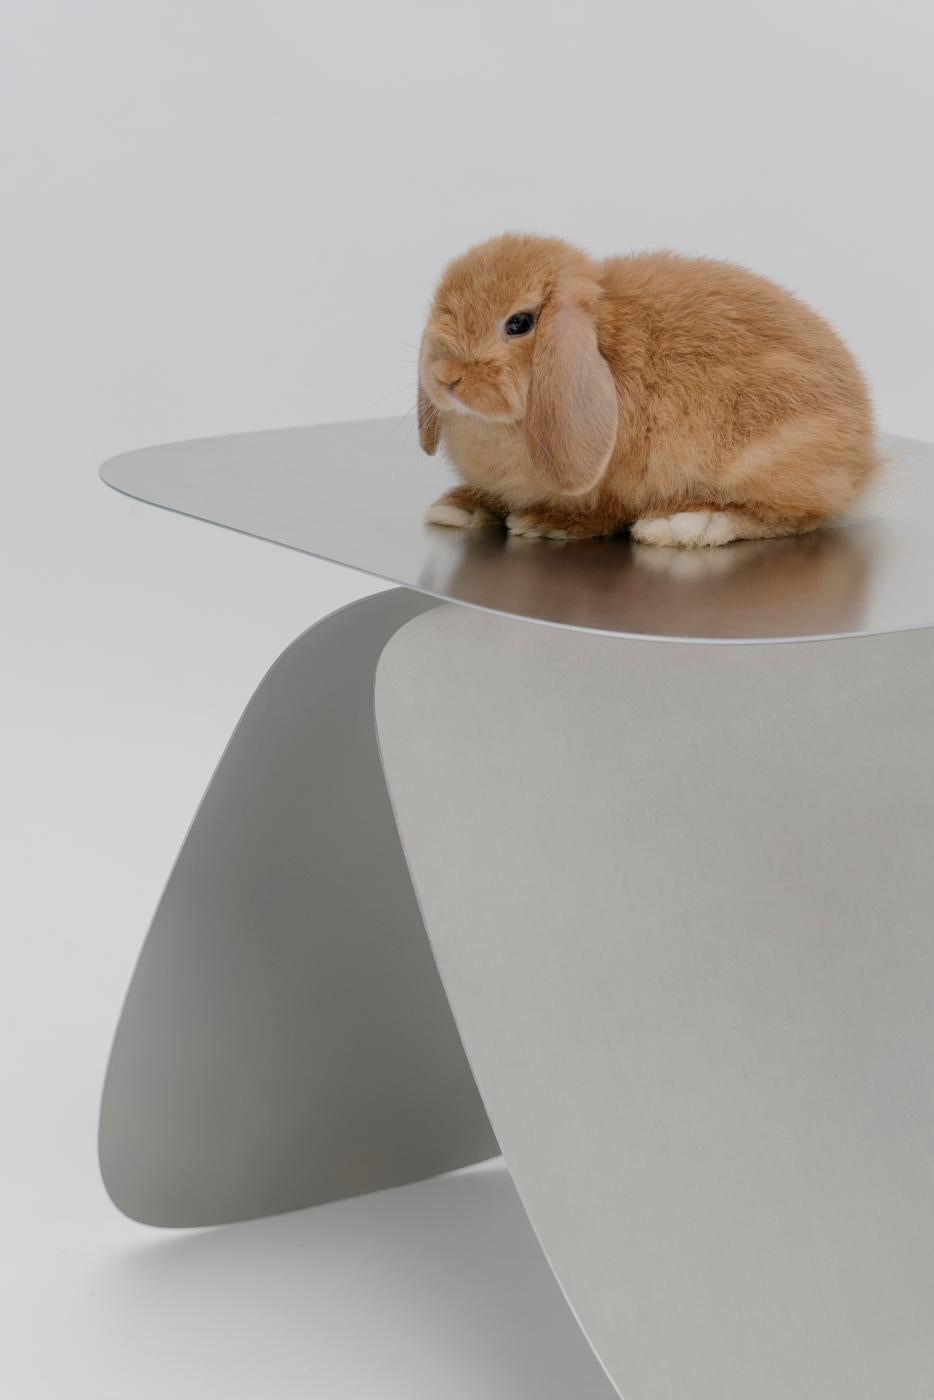 Bunny Table ist ein skurriler Beistelltisch, dessen Sockel an Hasenohren erinnert. Minimalistisch durch seine
Der Bunny-Tisch besteht aus drei ausgesägten Stahlteilen, was zu einer
ein zeitloses Design.

Bunny Table